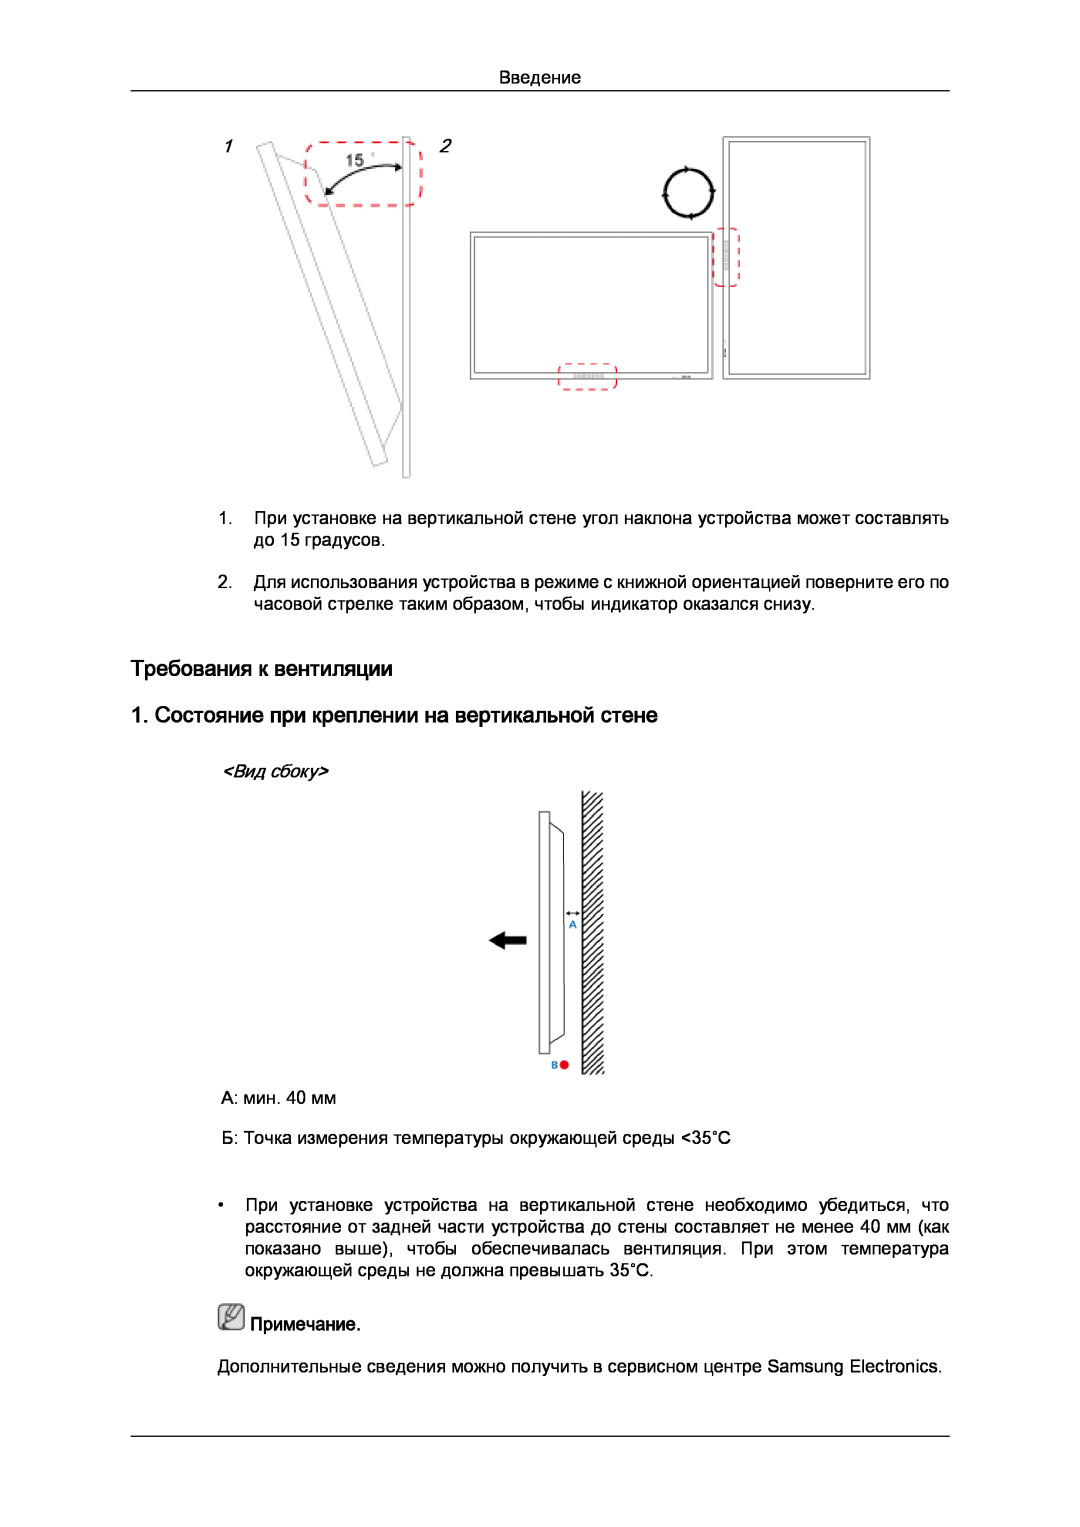 Samsung LH32CRSMBD/EN Требования к вентиляции, 1. Состояние при креплении на вертикальной стене, Вид сбоку, Примечание 